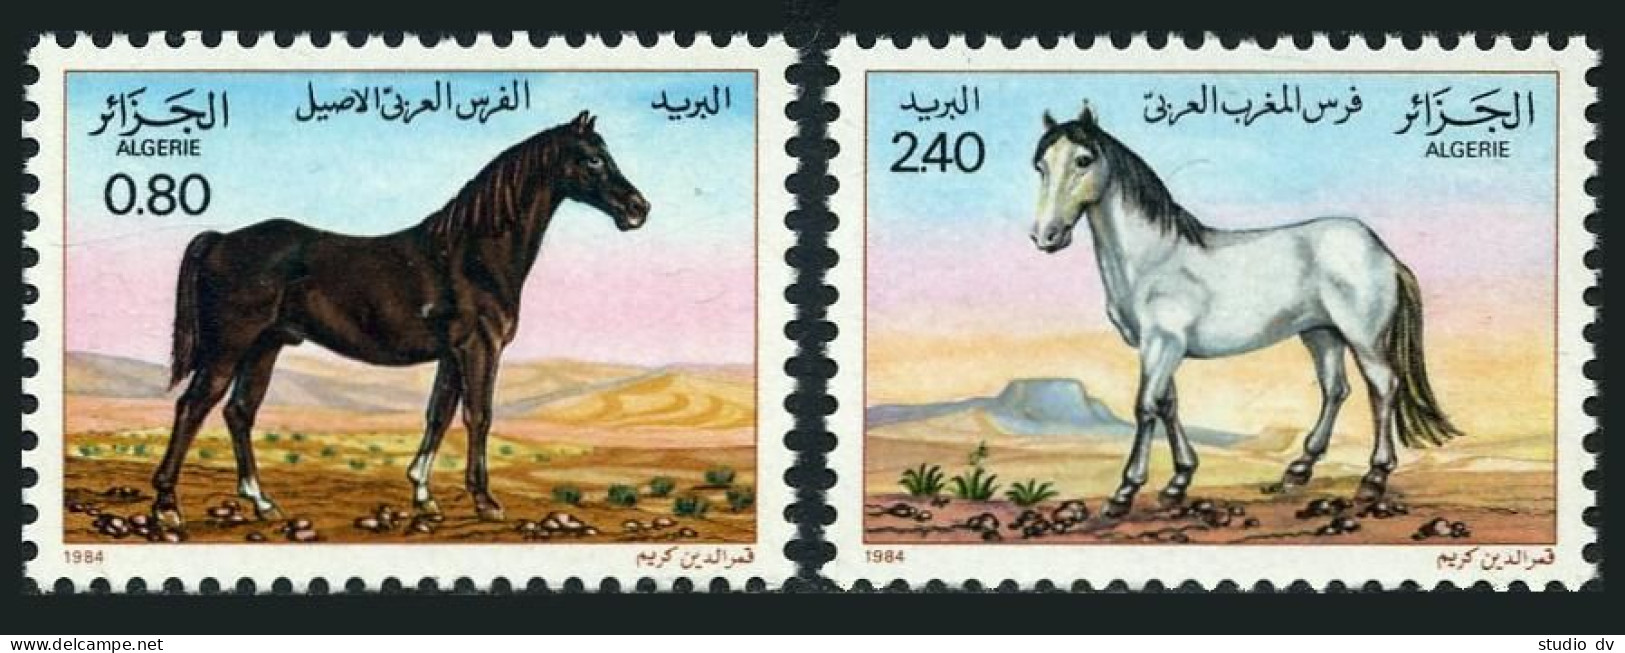 Algeria 743-744,MNH.Michel 854-855. Horses 1984.Brown Stallion,White Mare. - Algeria (1962-...)